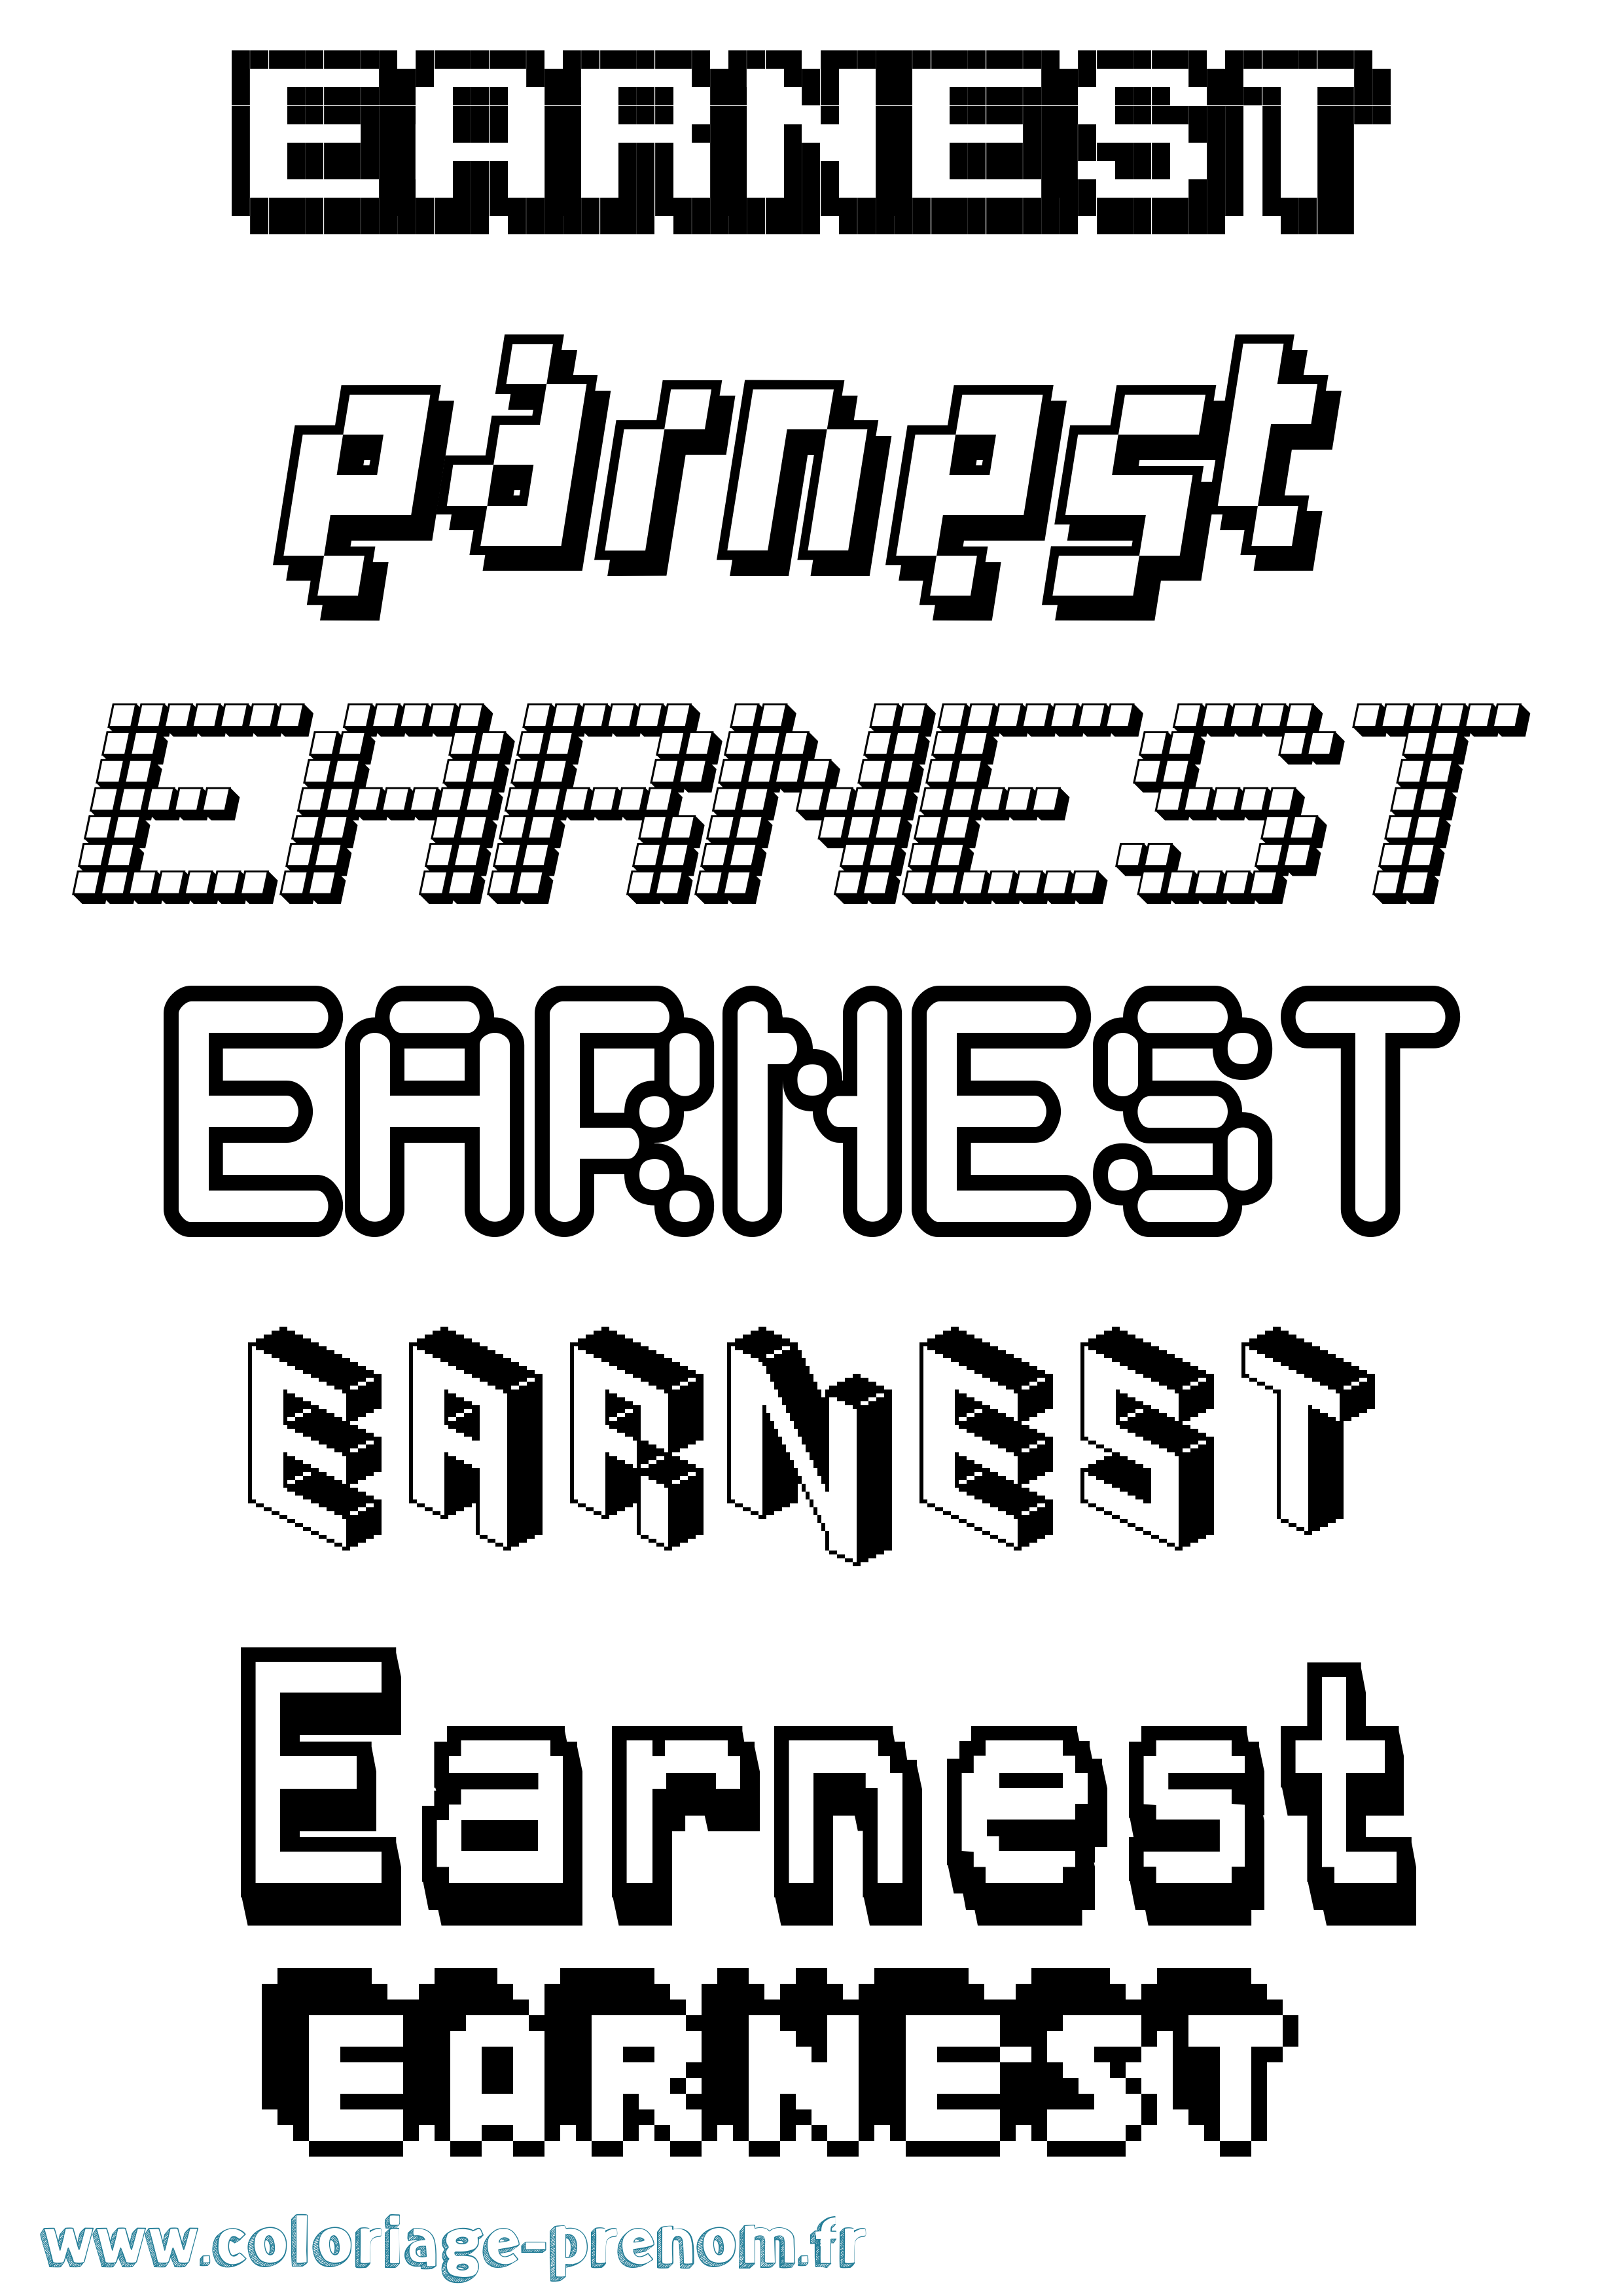 Coloriage prénom Earnest Pixel